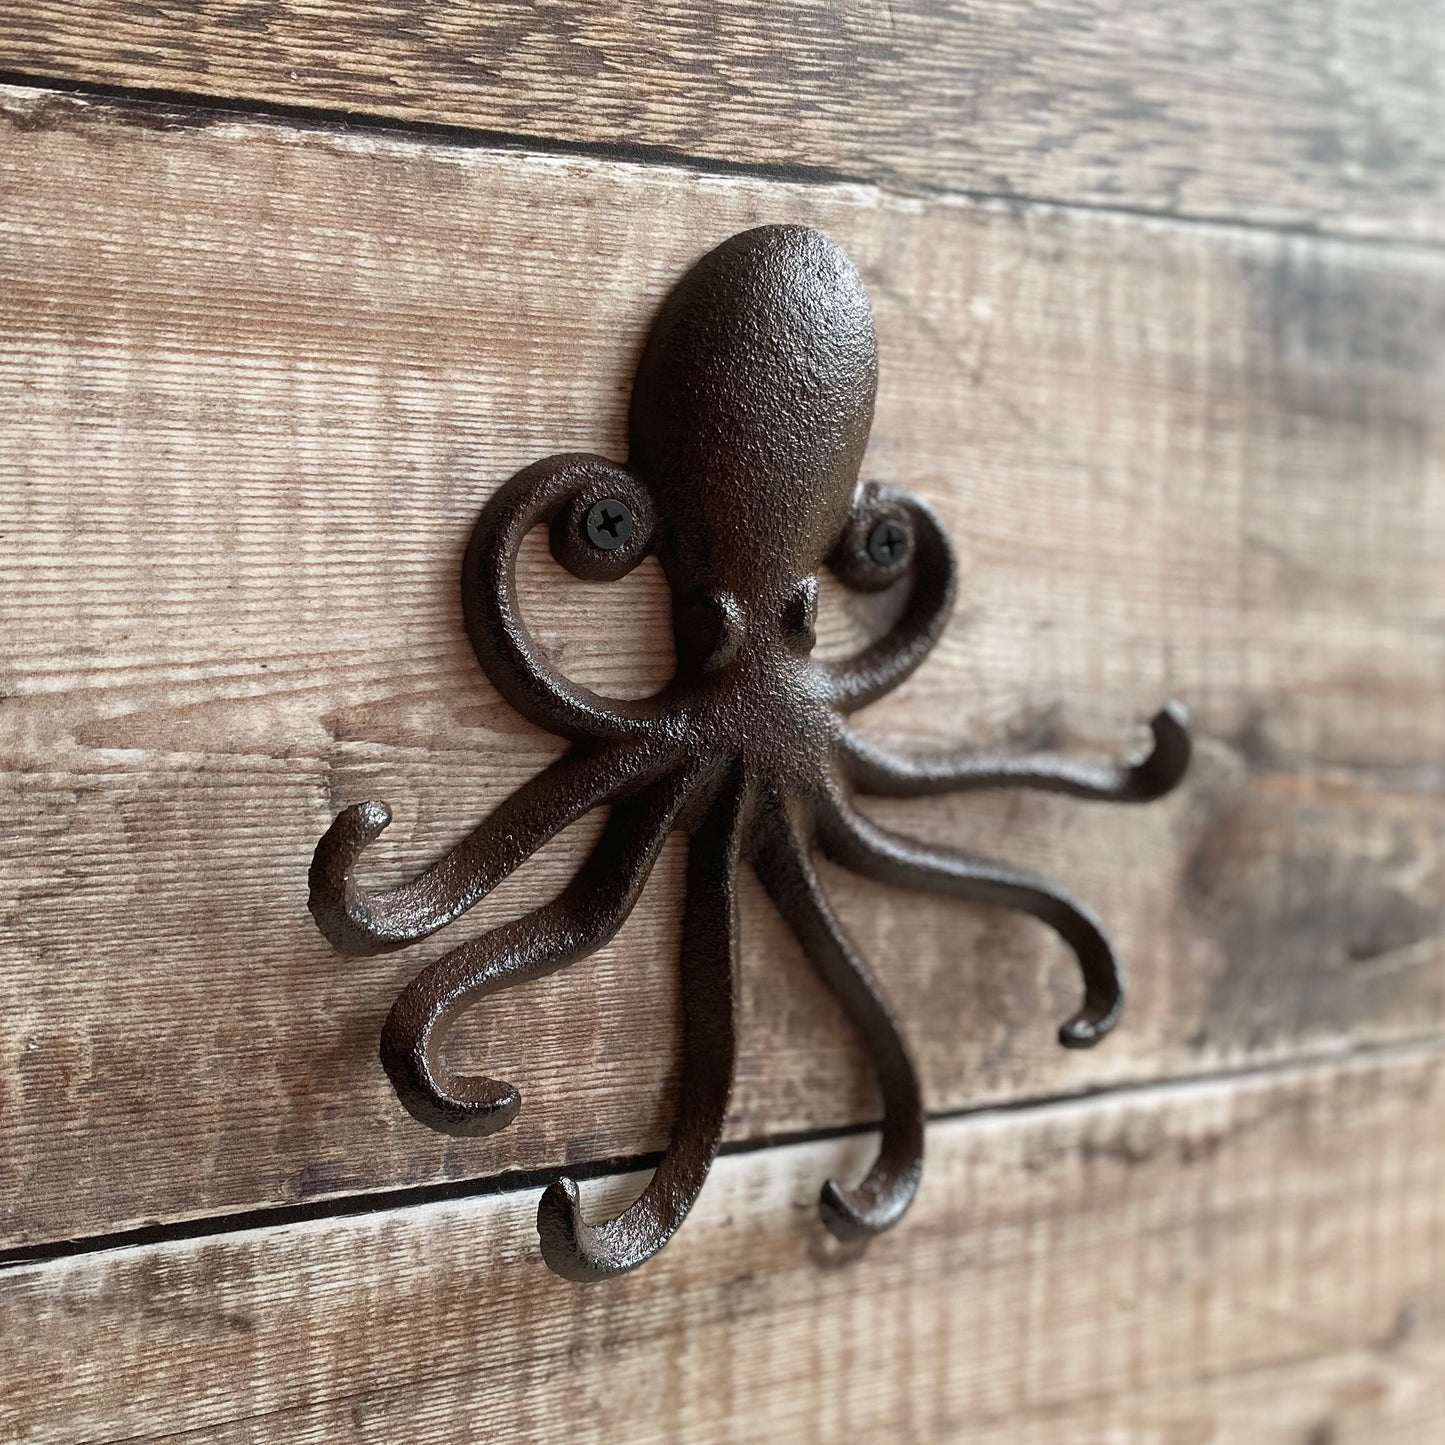 3D Printed Octopus Tentacle Hook Wall Mounted Hook Coat Hook